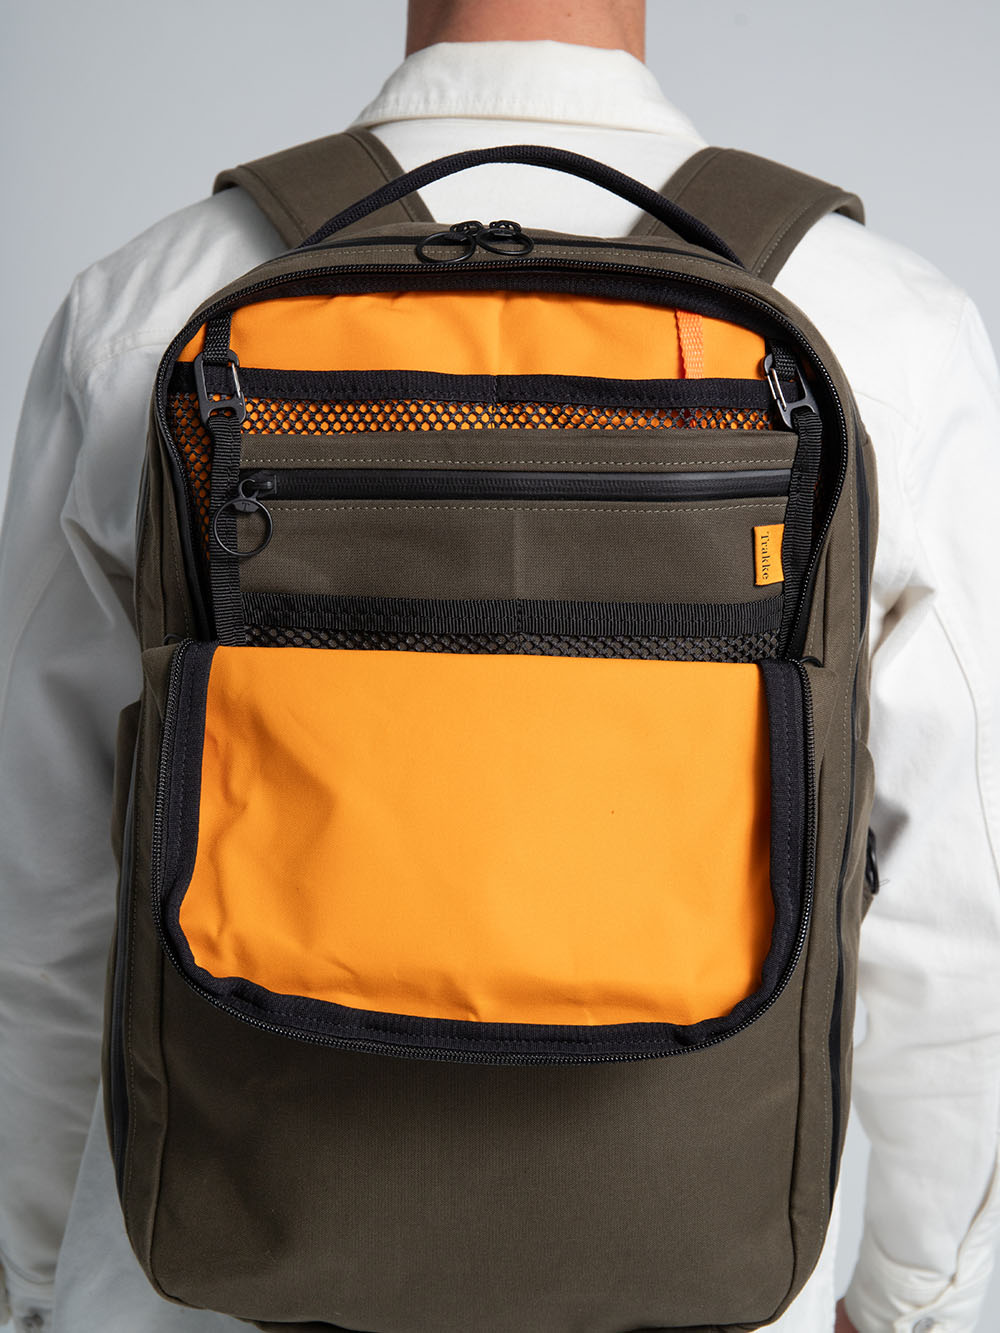 Storr 25L Travel Backpack